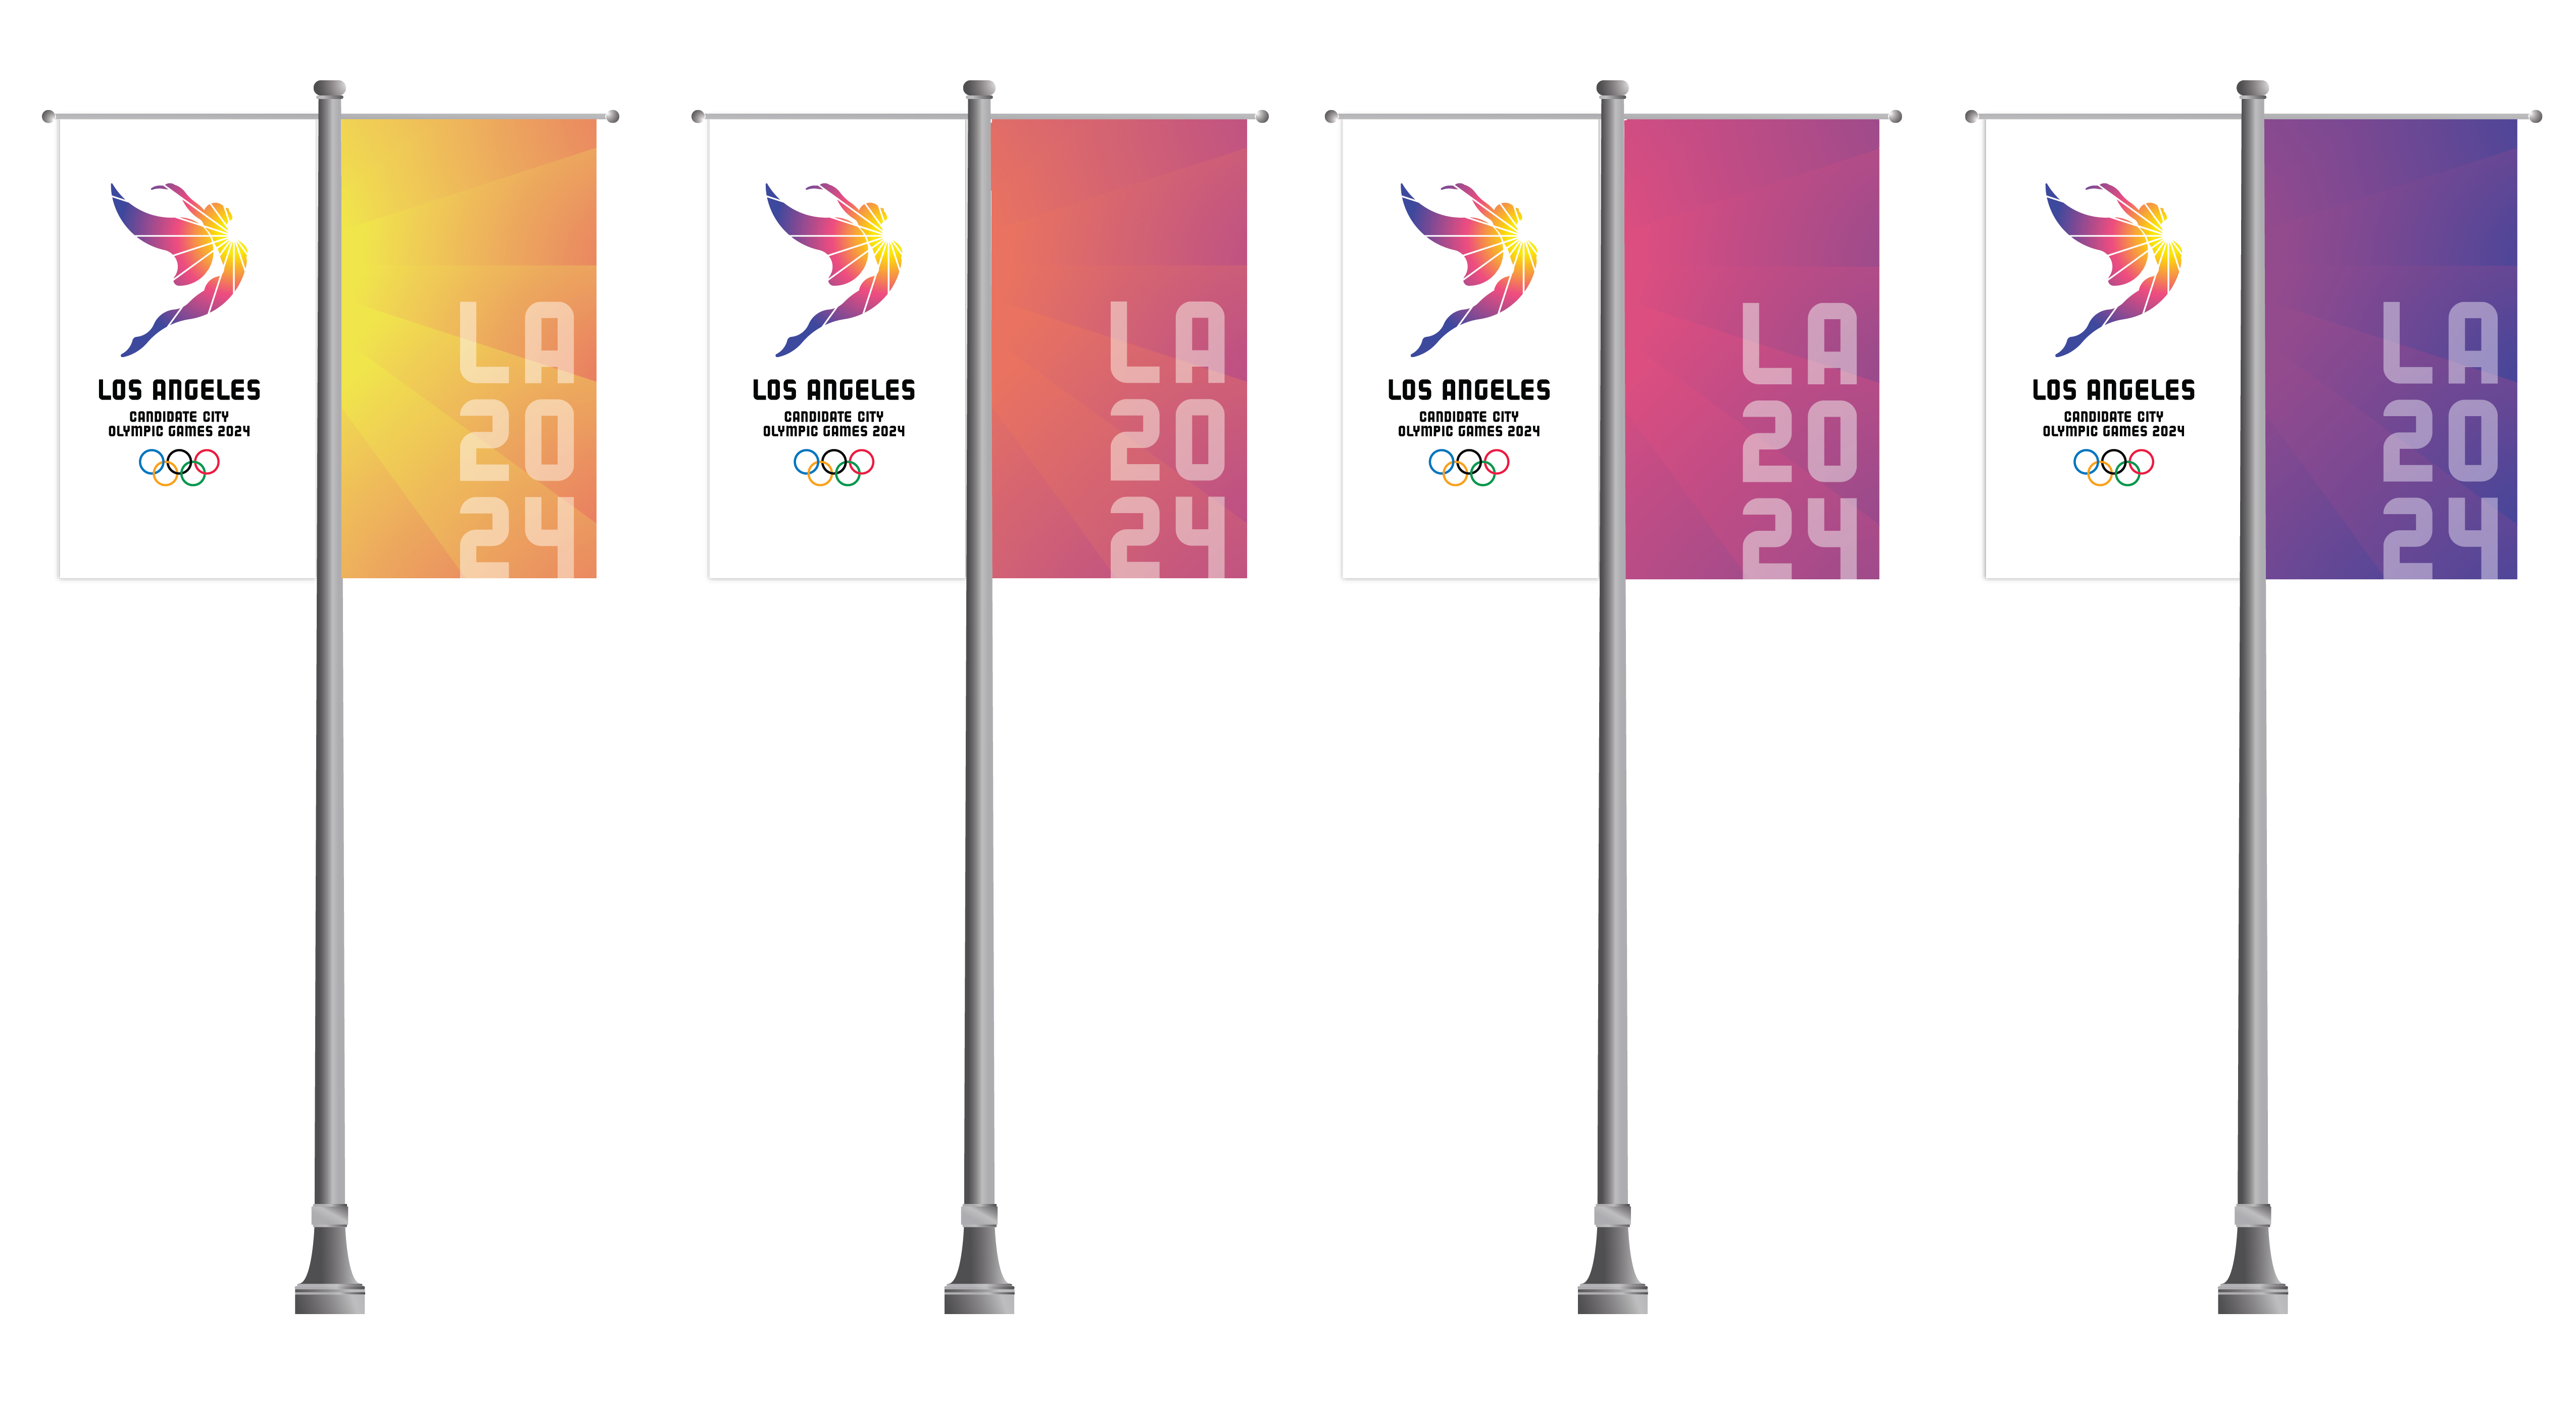 LA2028 IOC Evaluation Visit - Lightpost